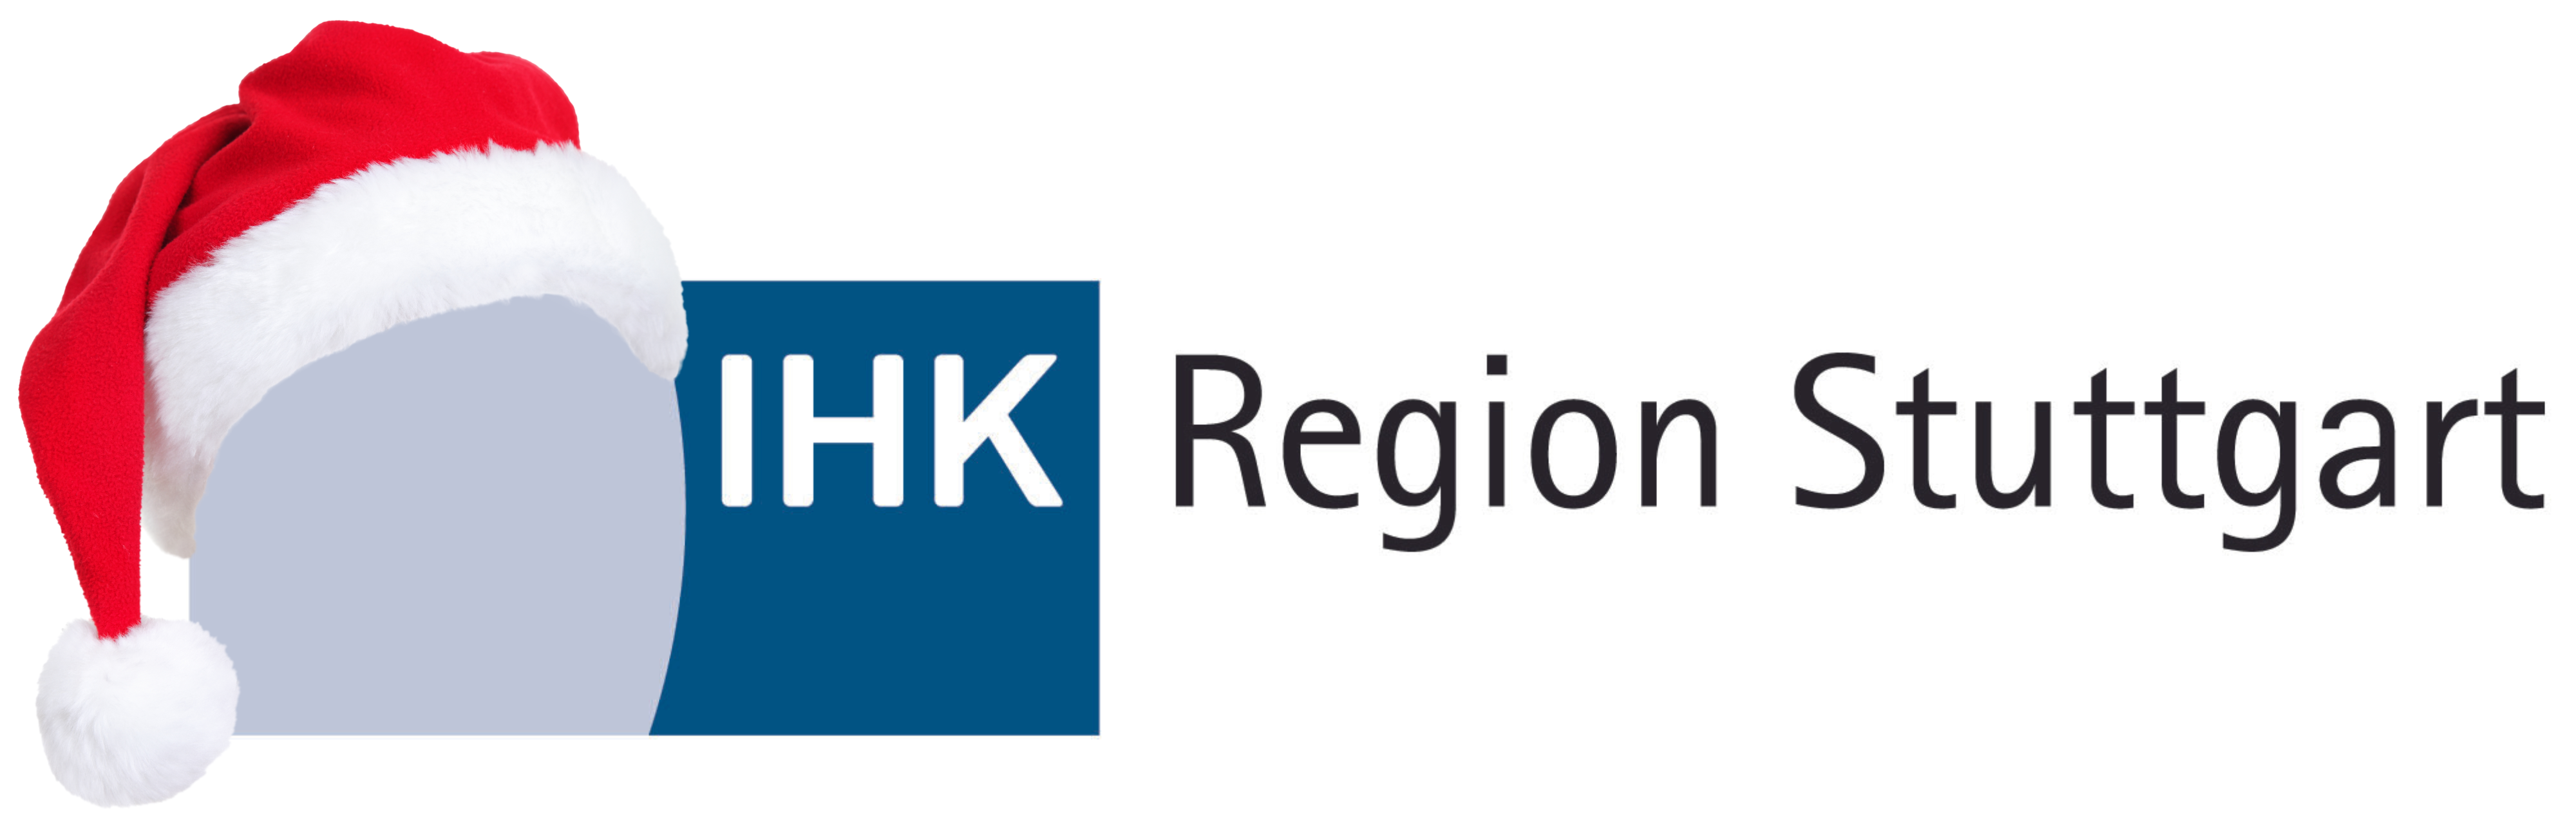 IHK Region Stuttgart 